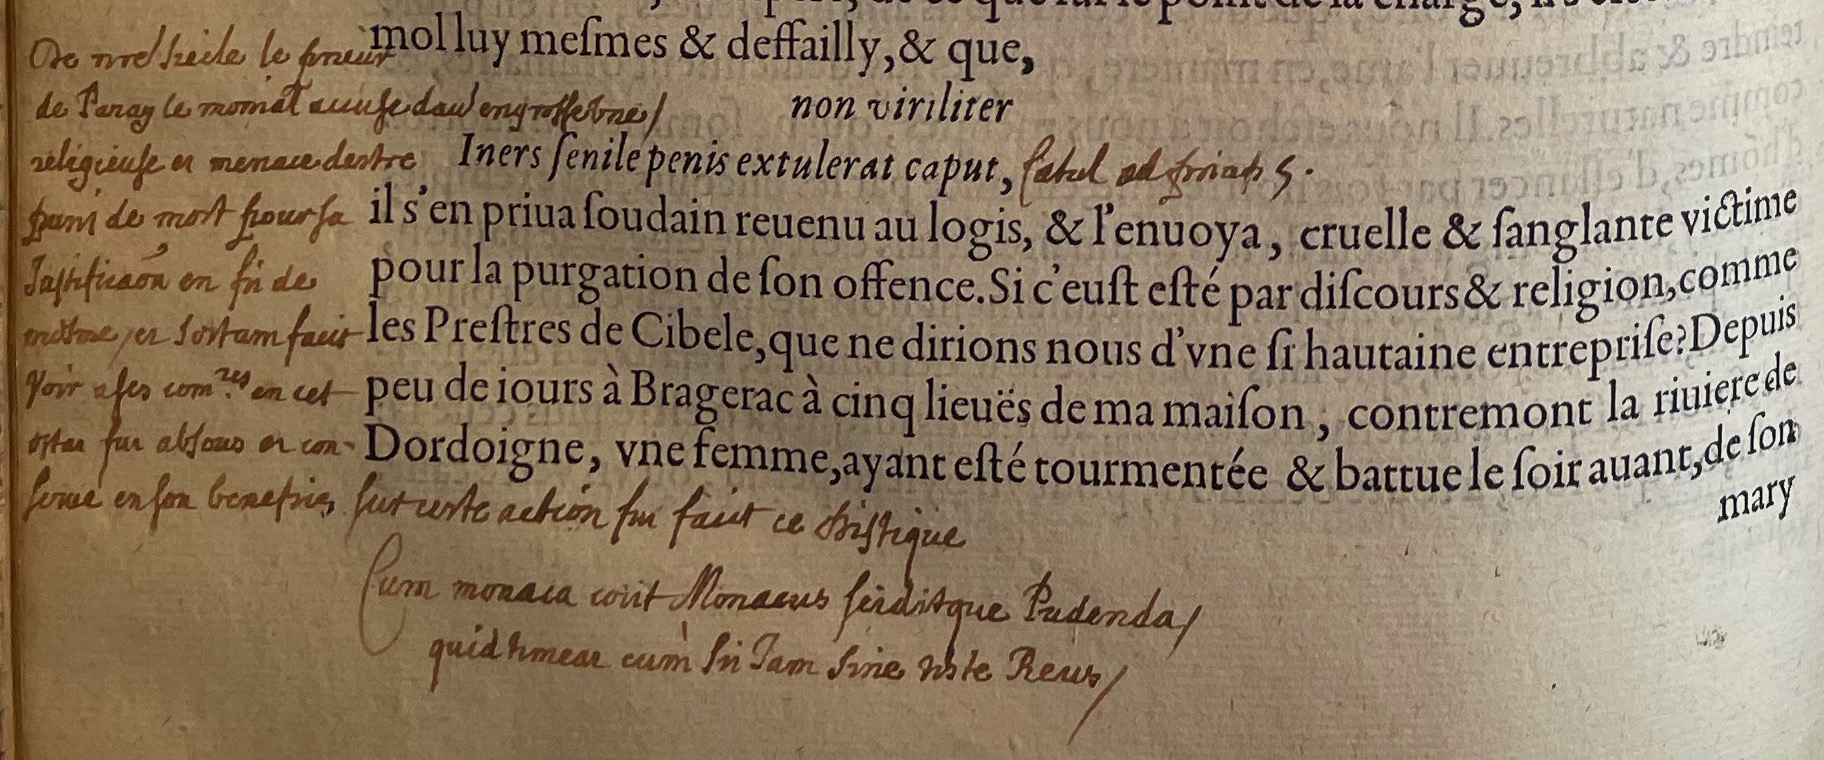 13.a. - p. 466, Livre II. Note de La Mure. Les Essais, 1595. Exemplaire Laval.